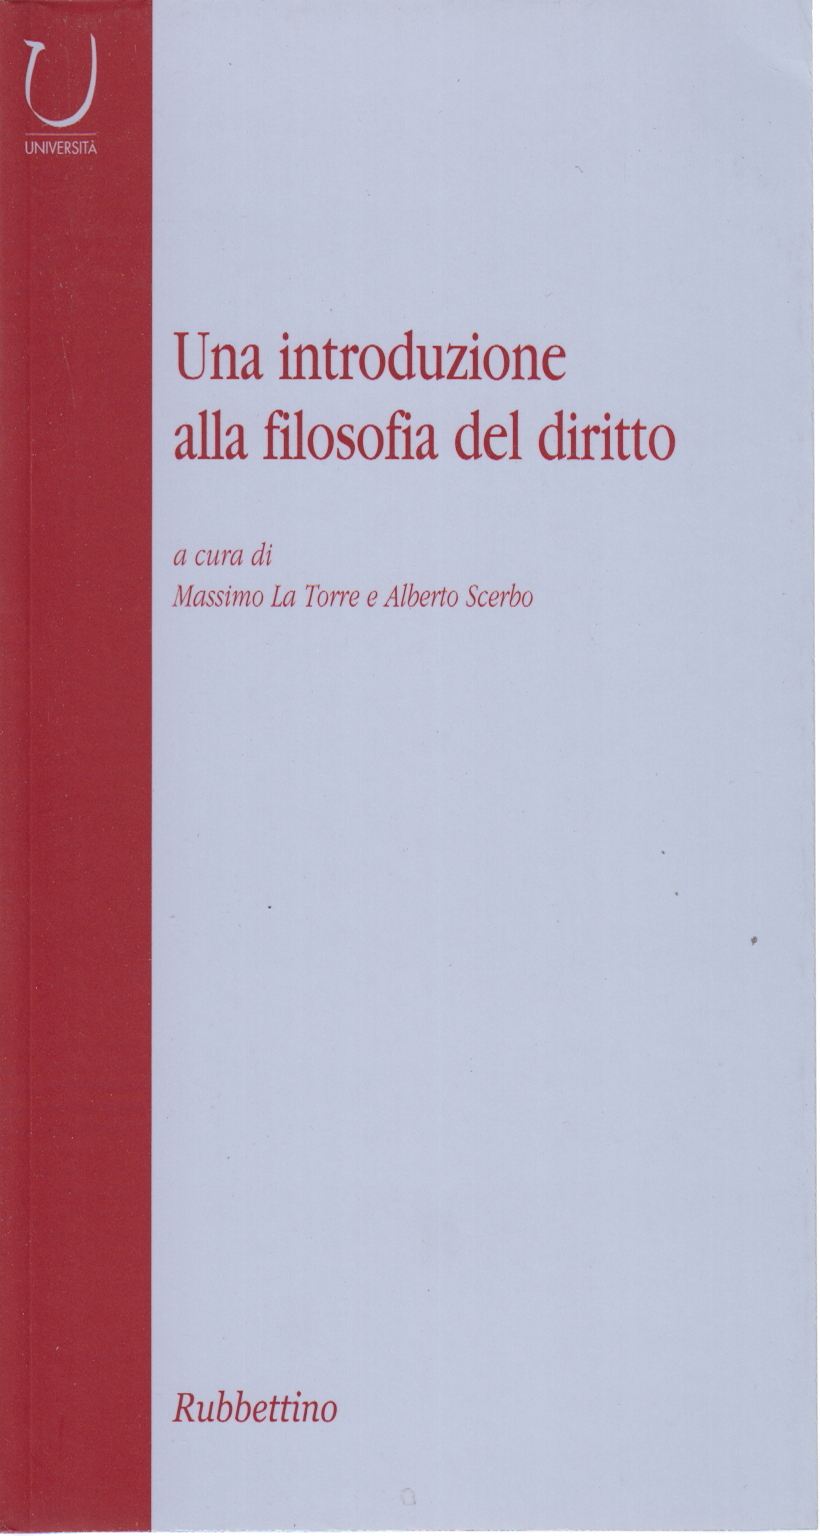 Eine einführung in die philosophie des rechts, Massimo La Torre Alberto Scerbo